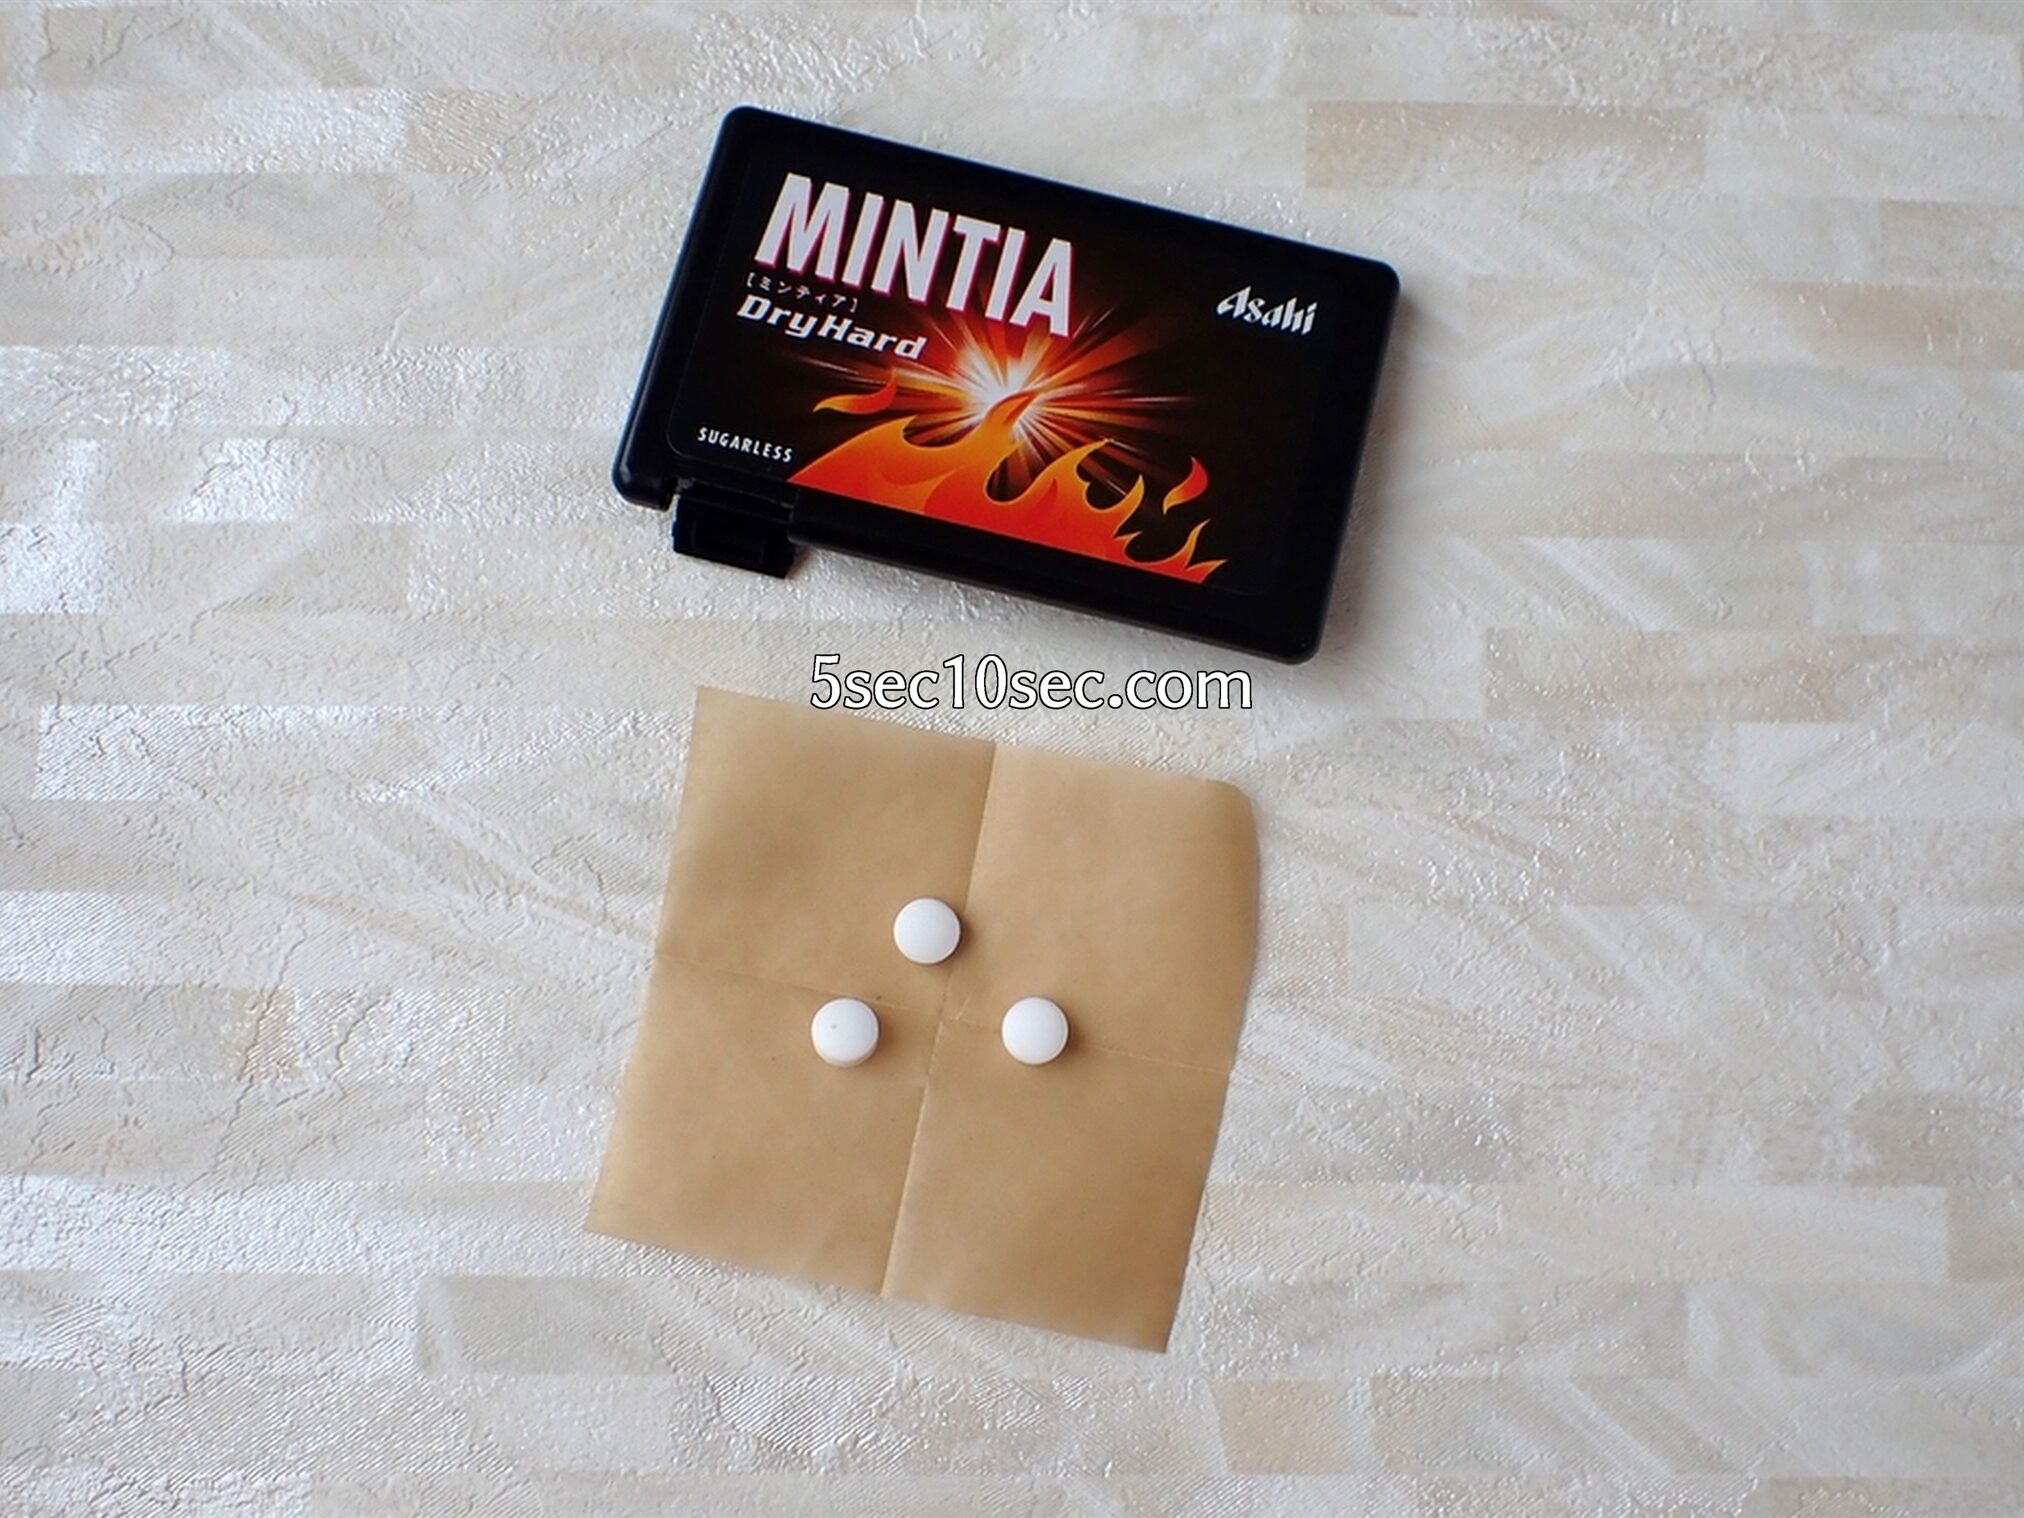 中身のミントタブレット菓子の写真 新ミンティア ドライハード 新MINTIA DryHard